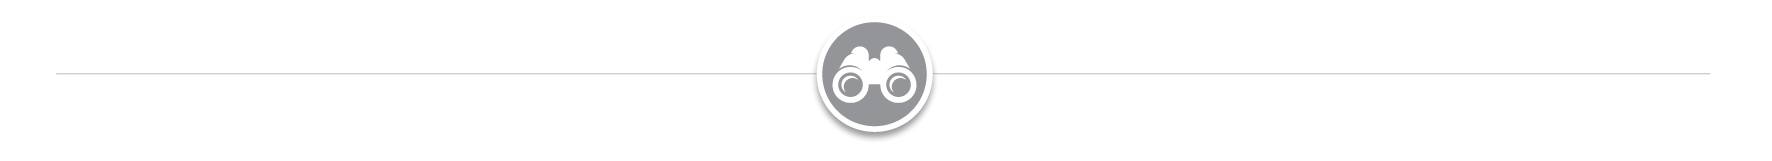 e-Discovery icon image